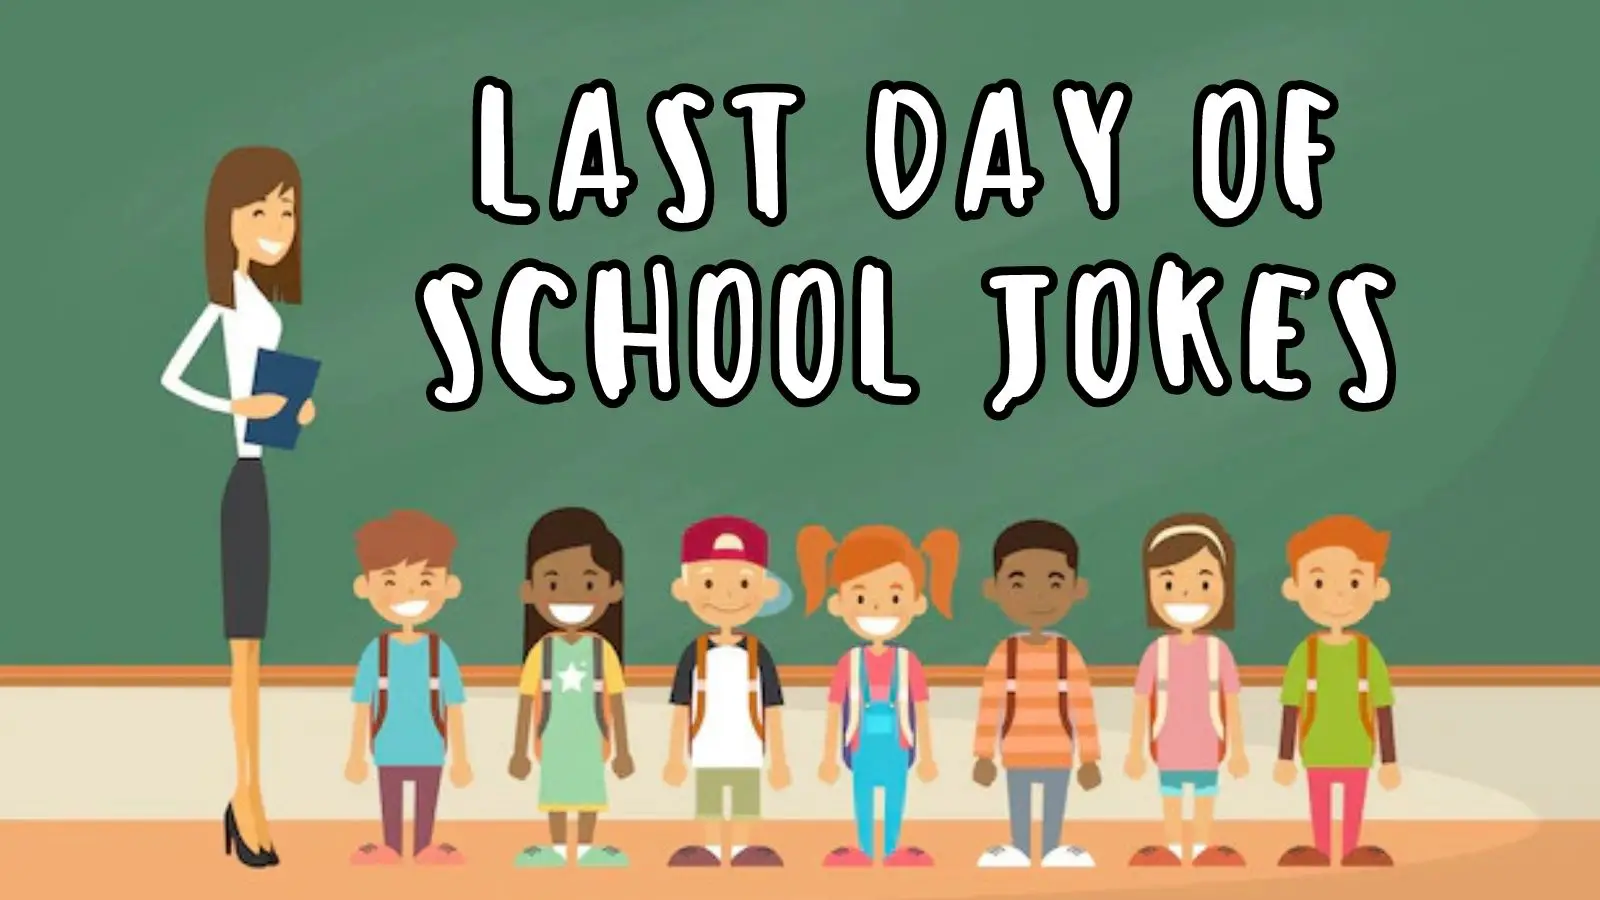 Last Day Of School Jokes on Kids and Teachers